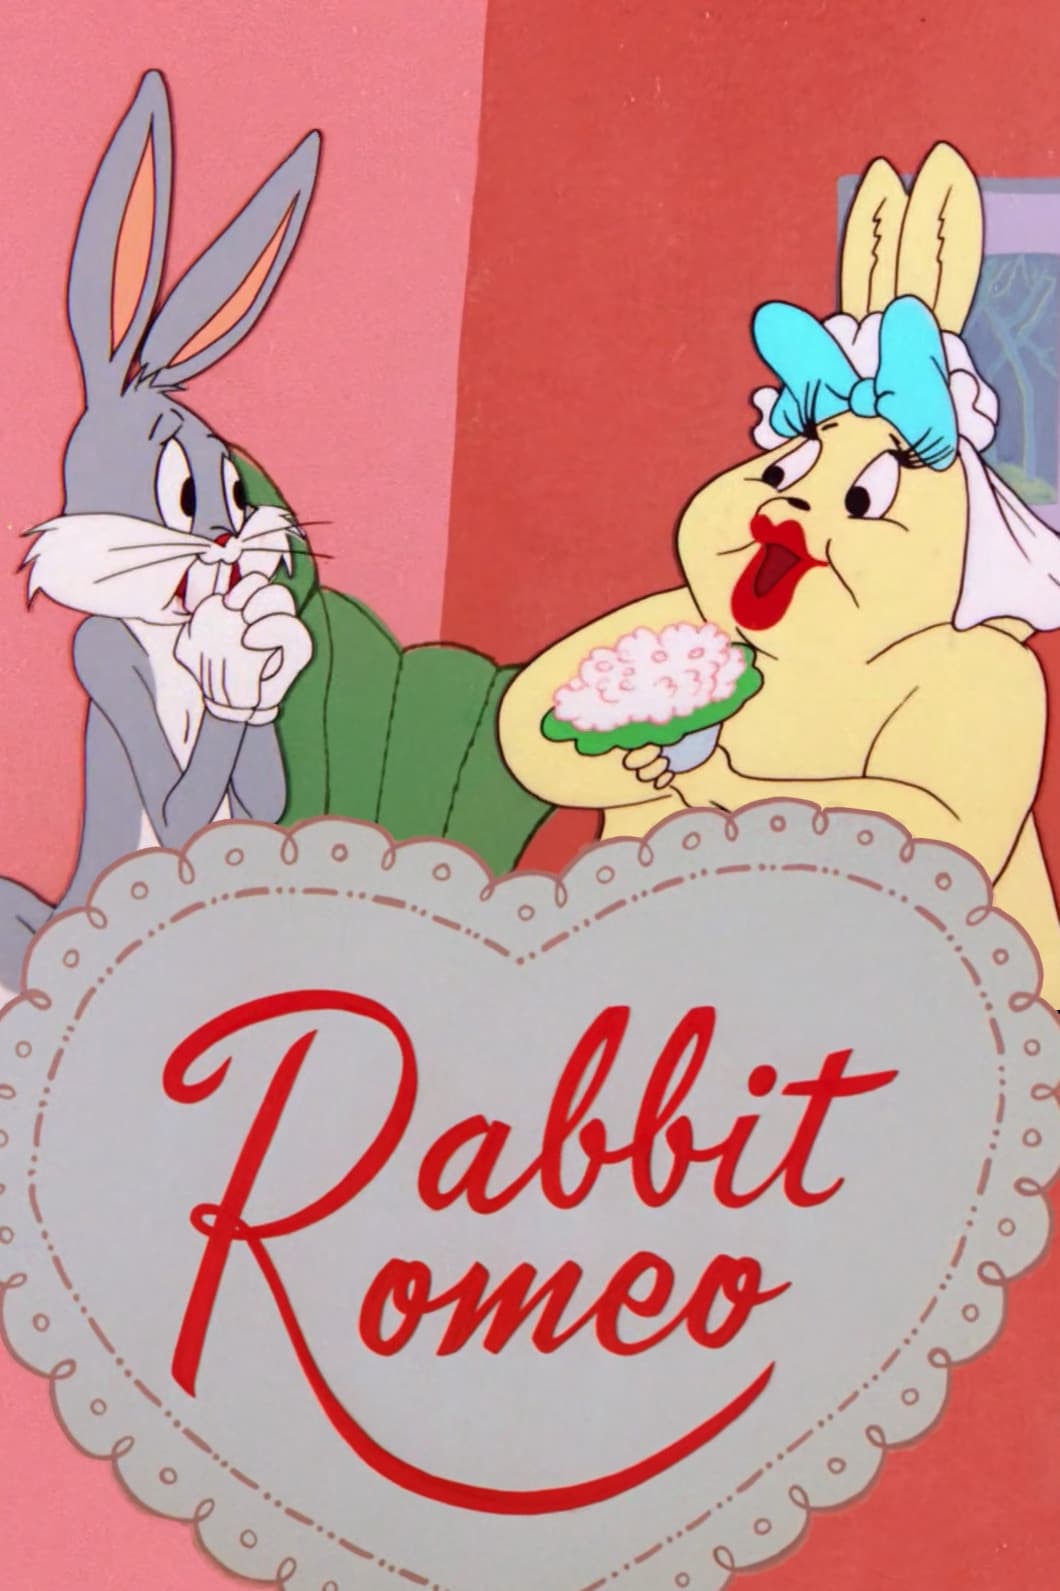 Rabbit Romeo (1957)